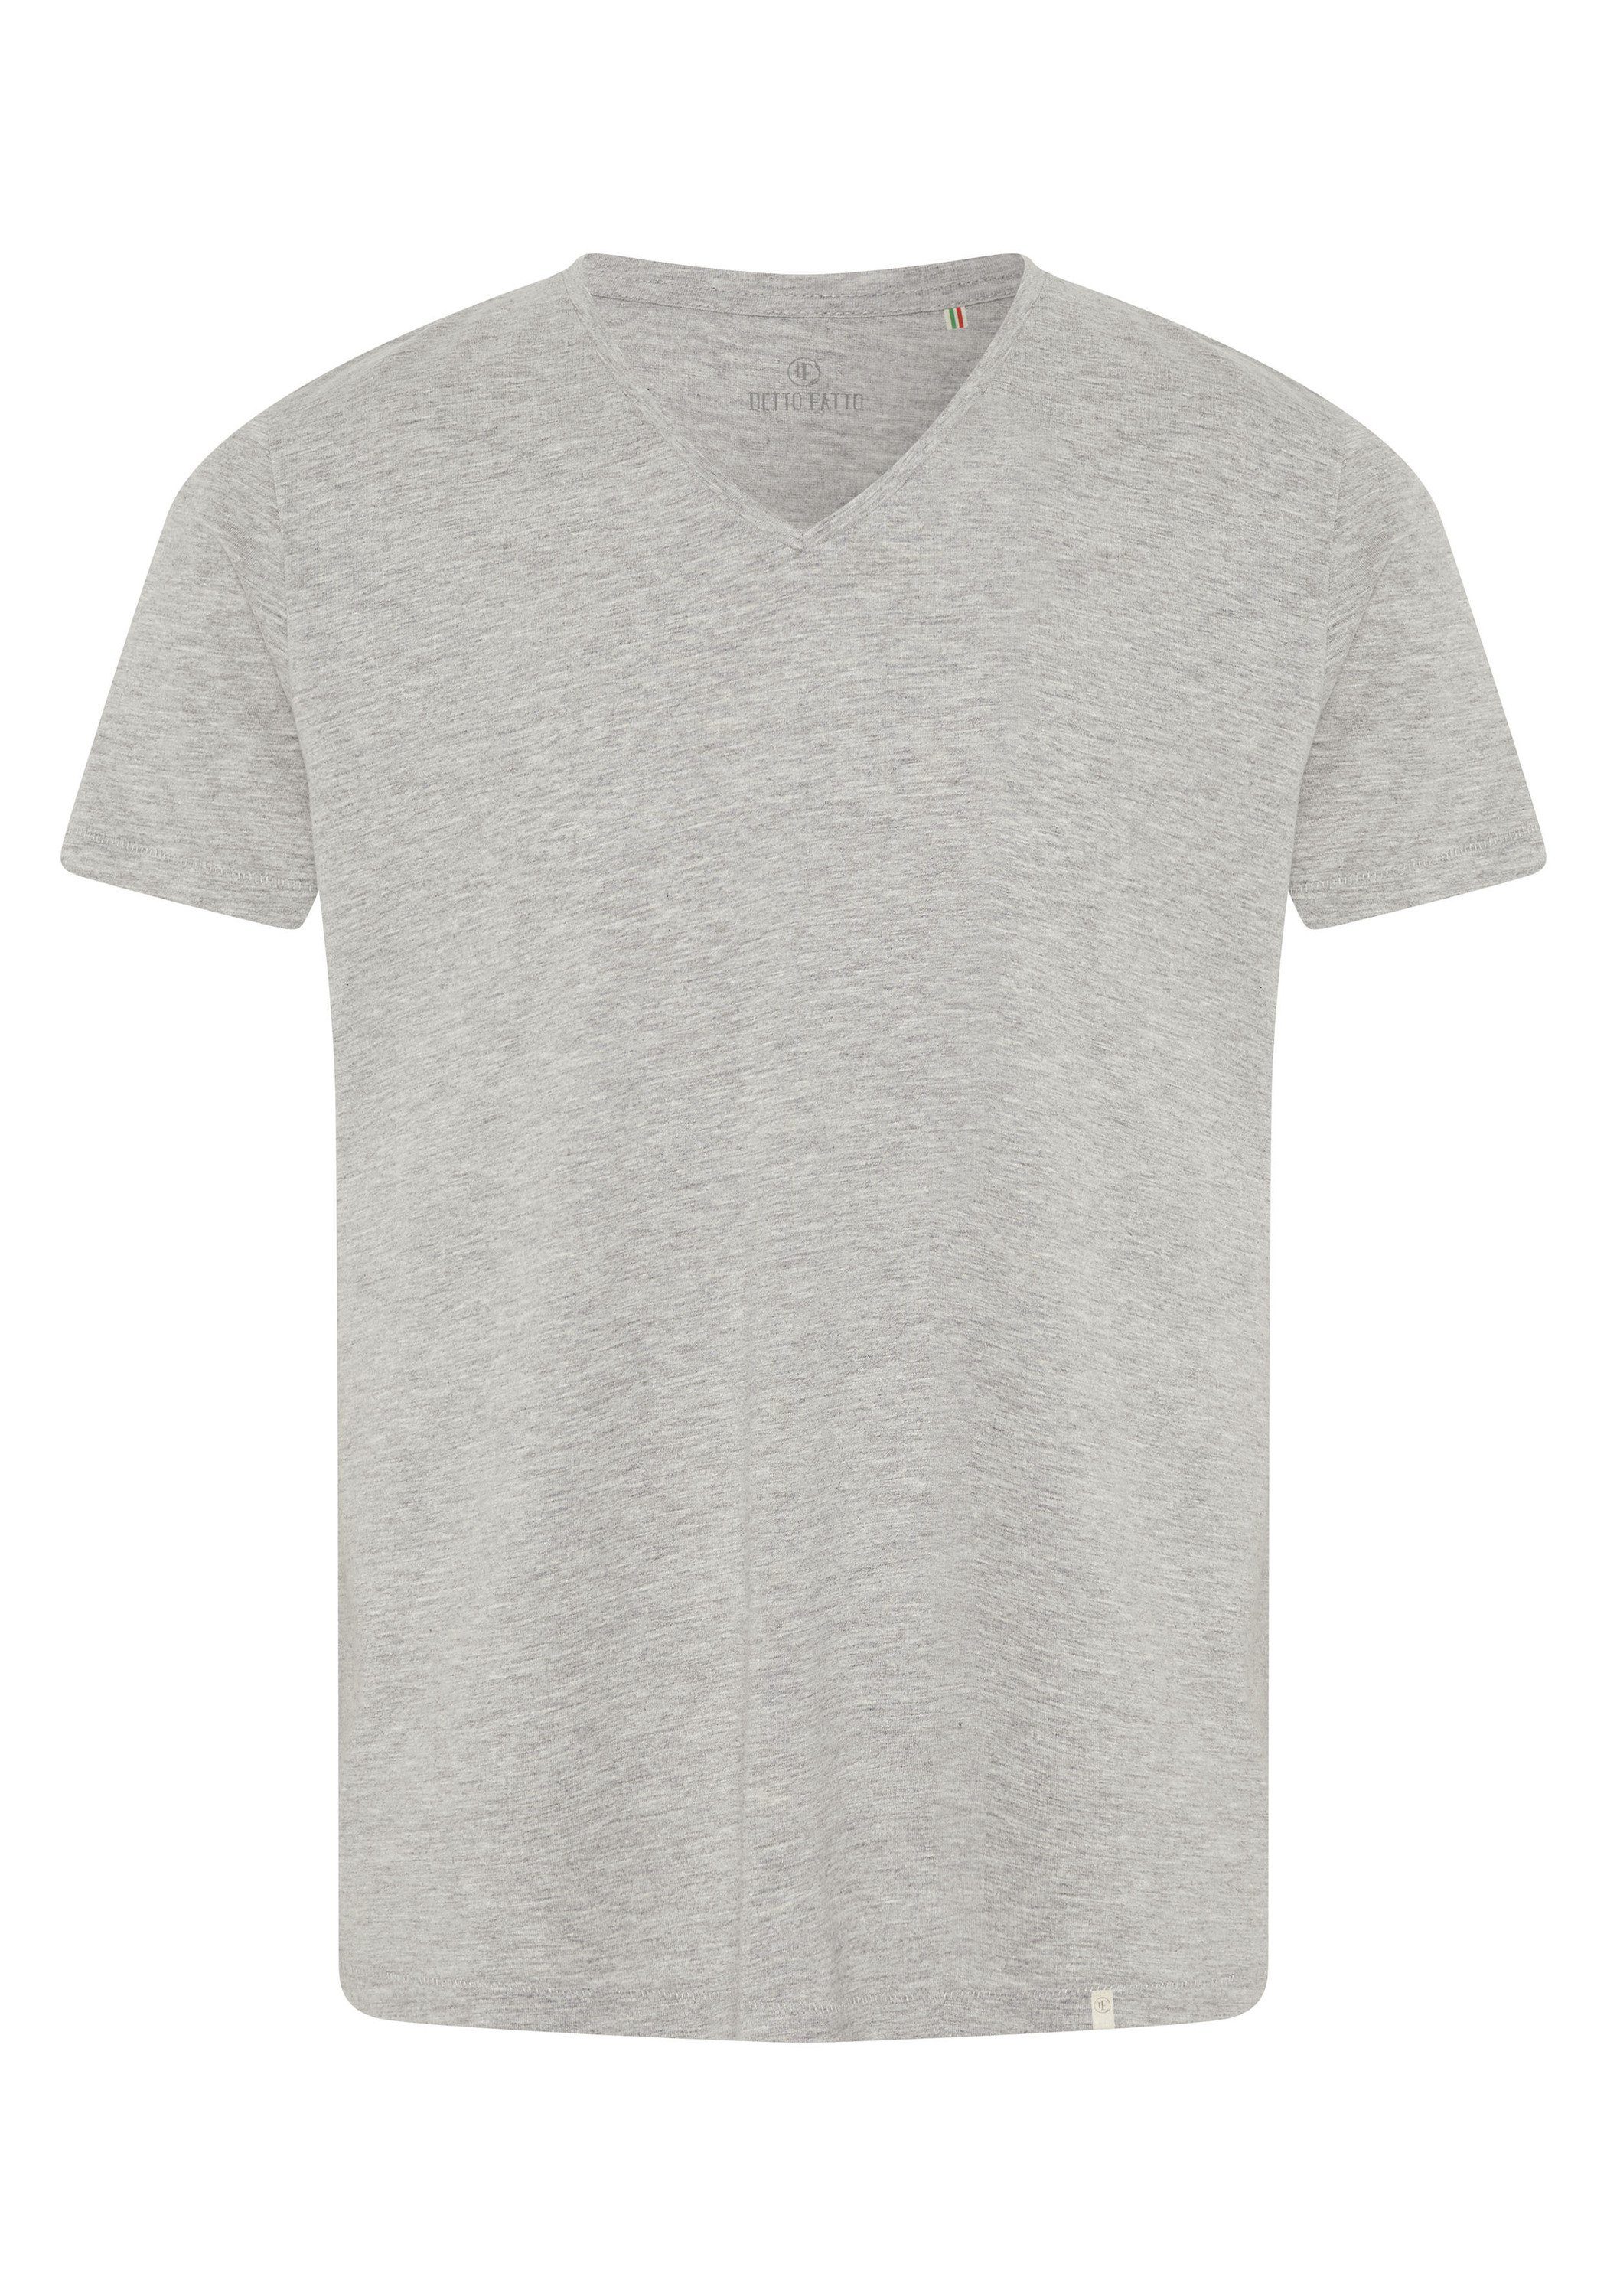 Direkt geführter Laden Detto Fatto im Grey 72 T-Shirt Basic-Stil Light